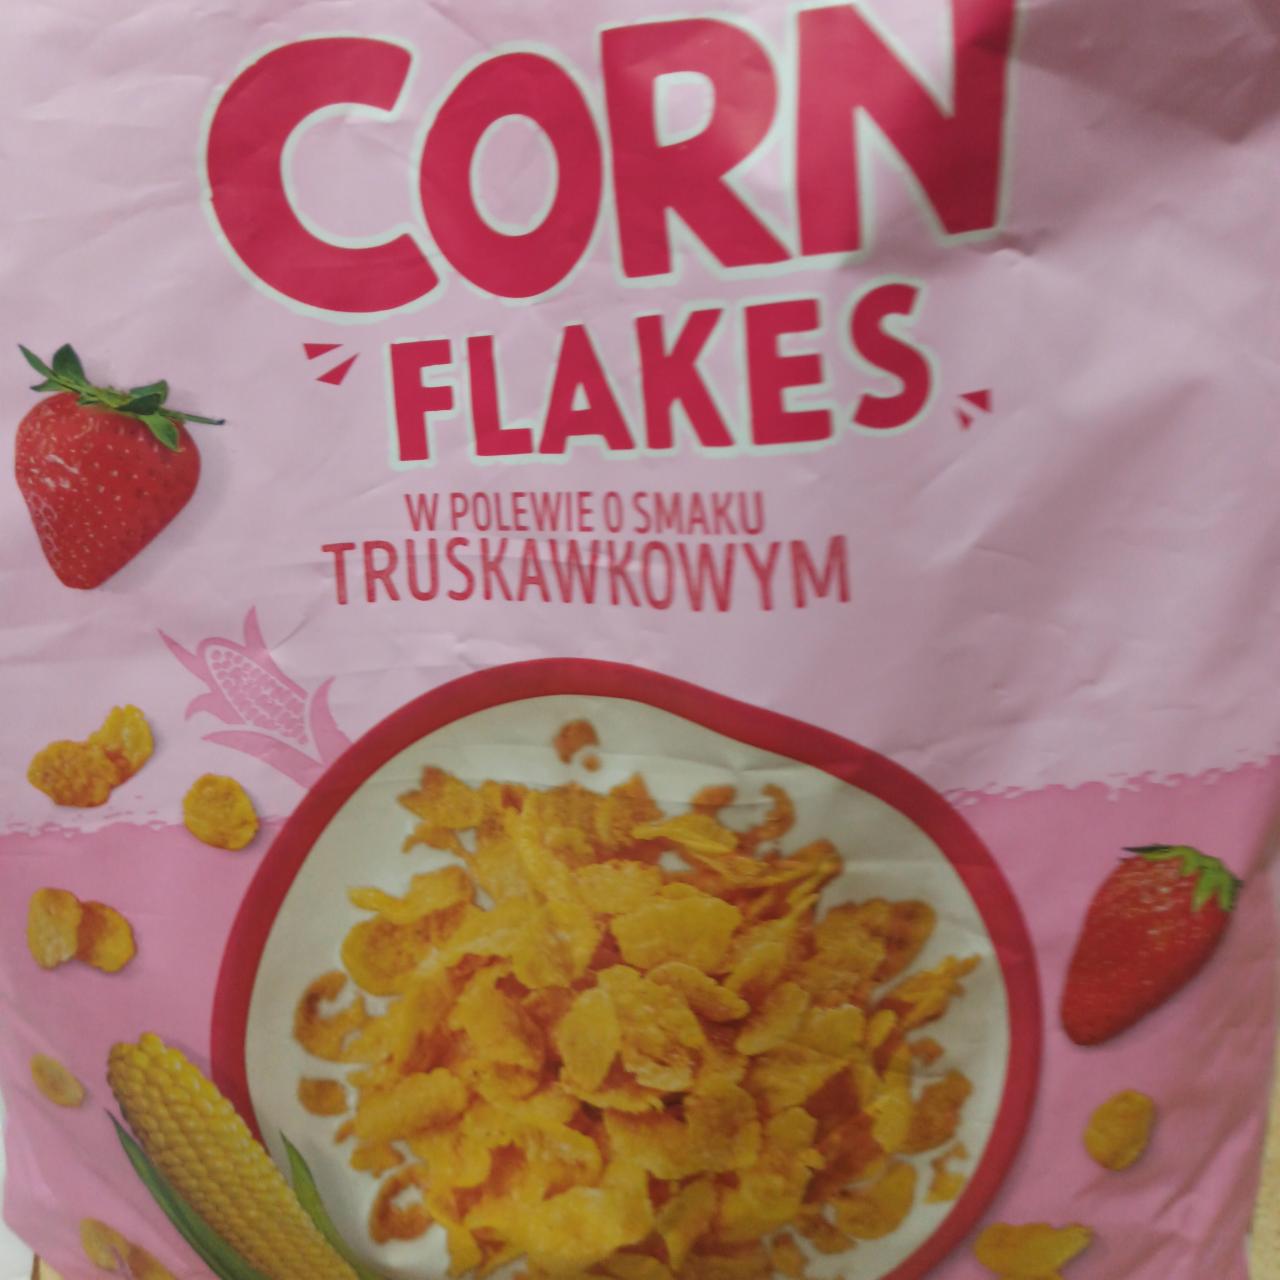 Zdjęcia - Corn Flakes w polewie o smaku truskawkowym Lidl